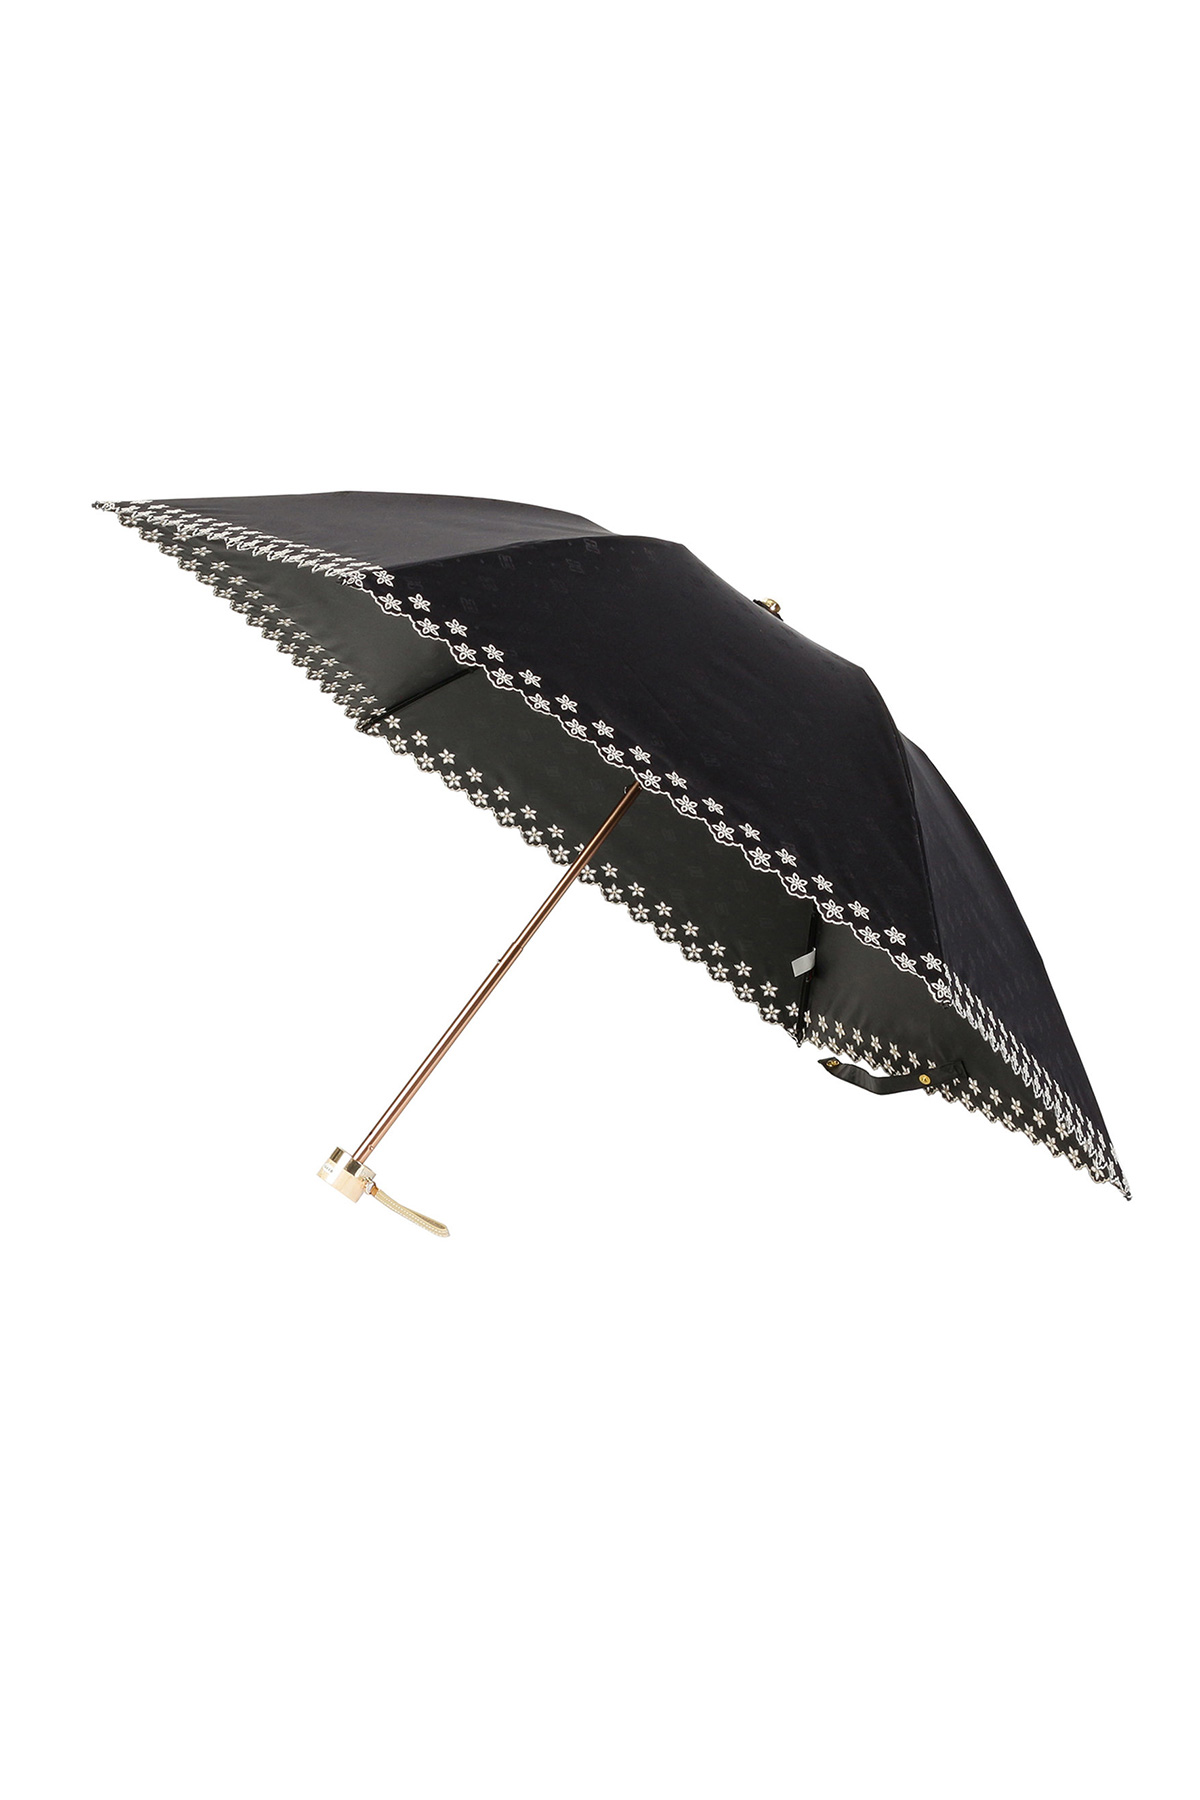 【日傘】ミニ折りたたみ傘ジャカード刺繍 詳細画像 6